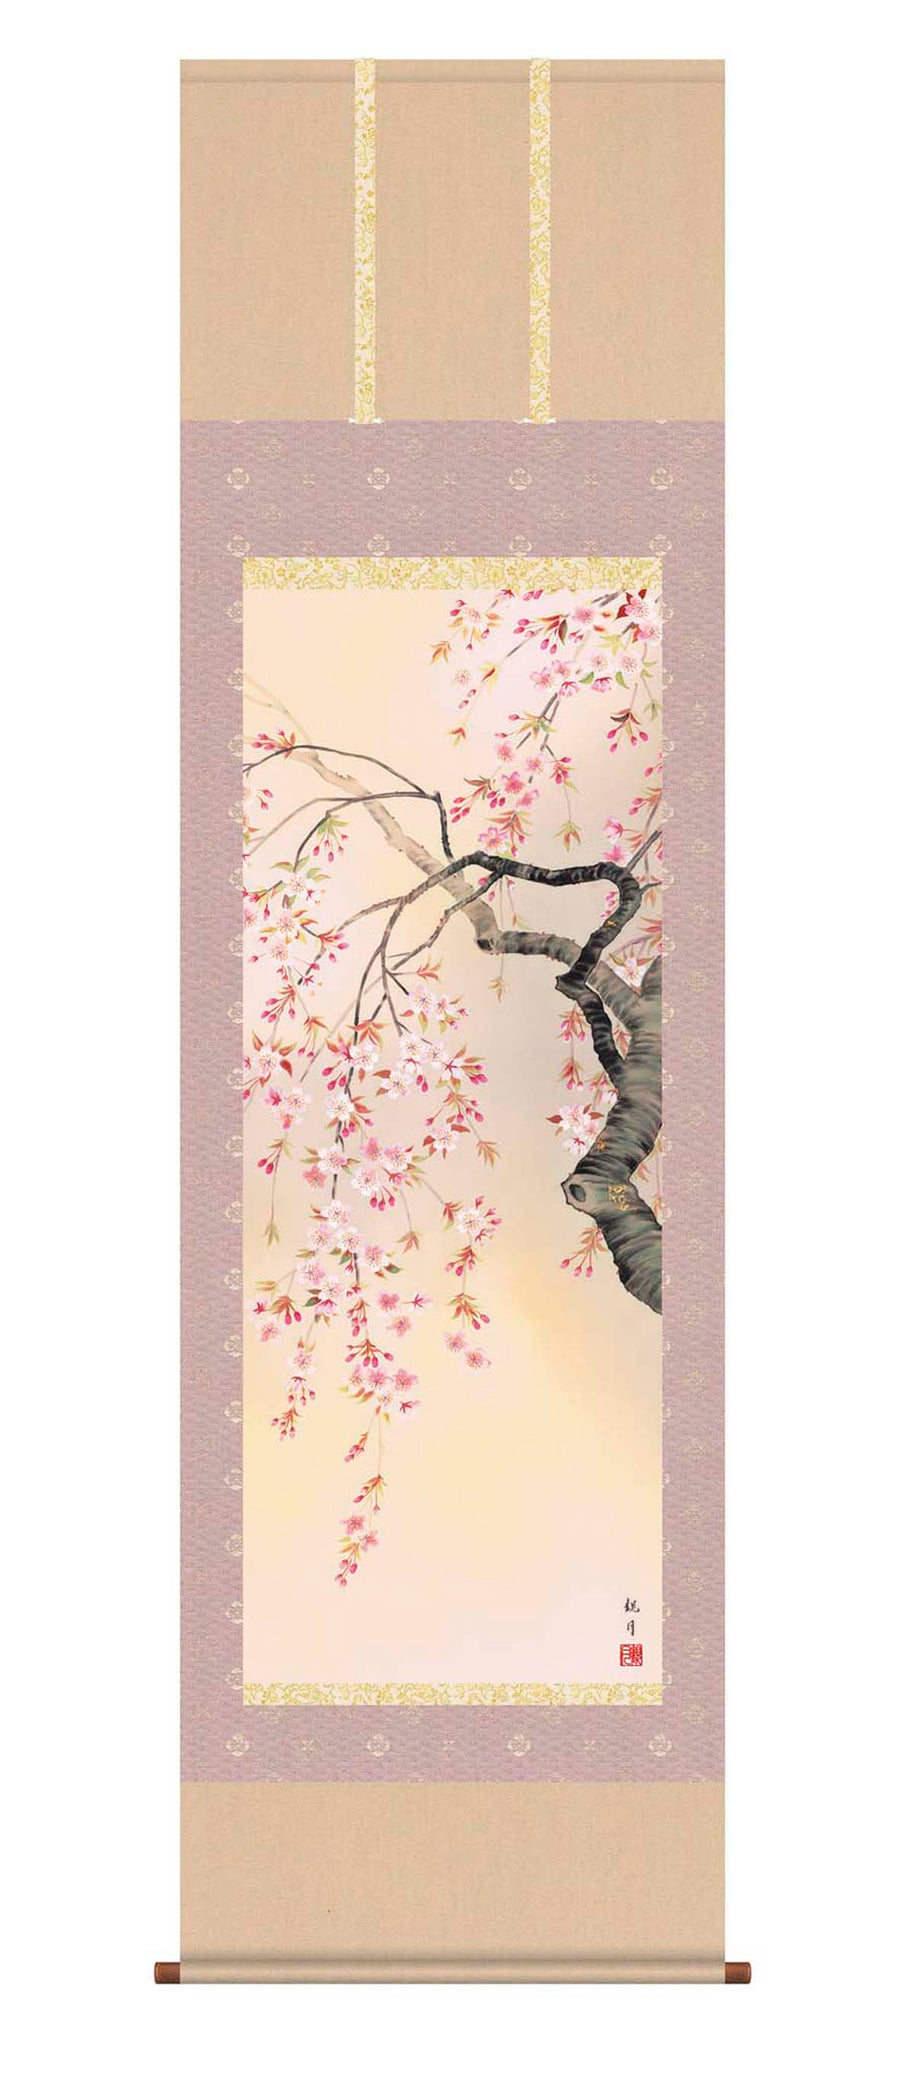 Ouka-Ranman (Cherry Blossom Flower in Full Bloom)